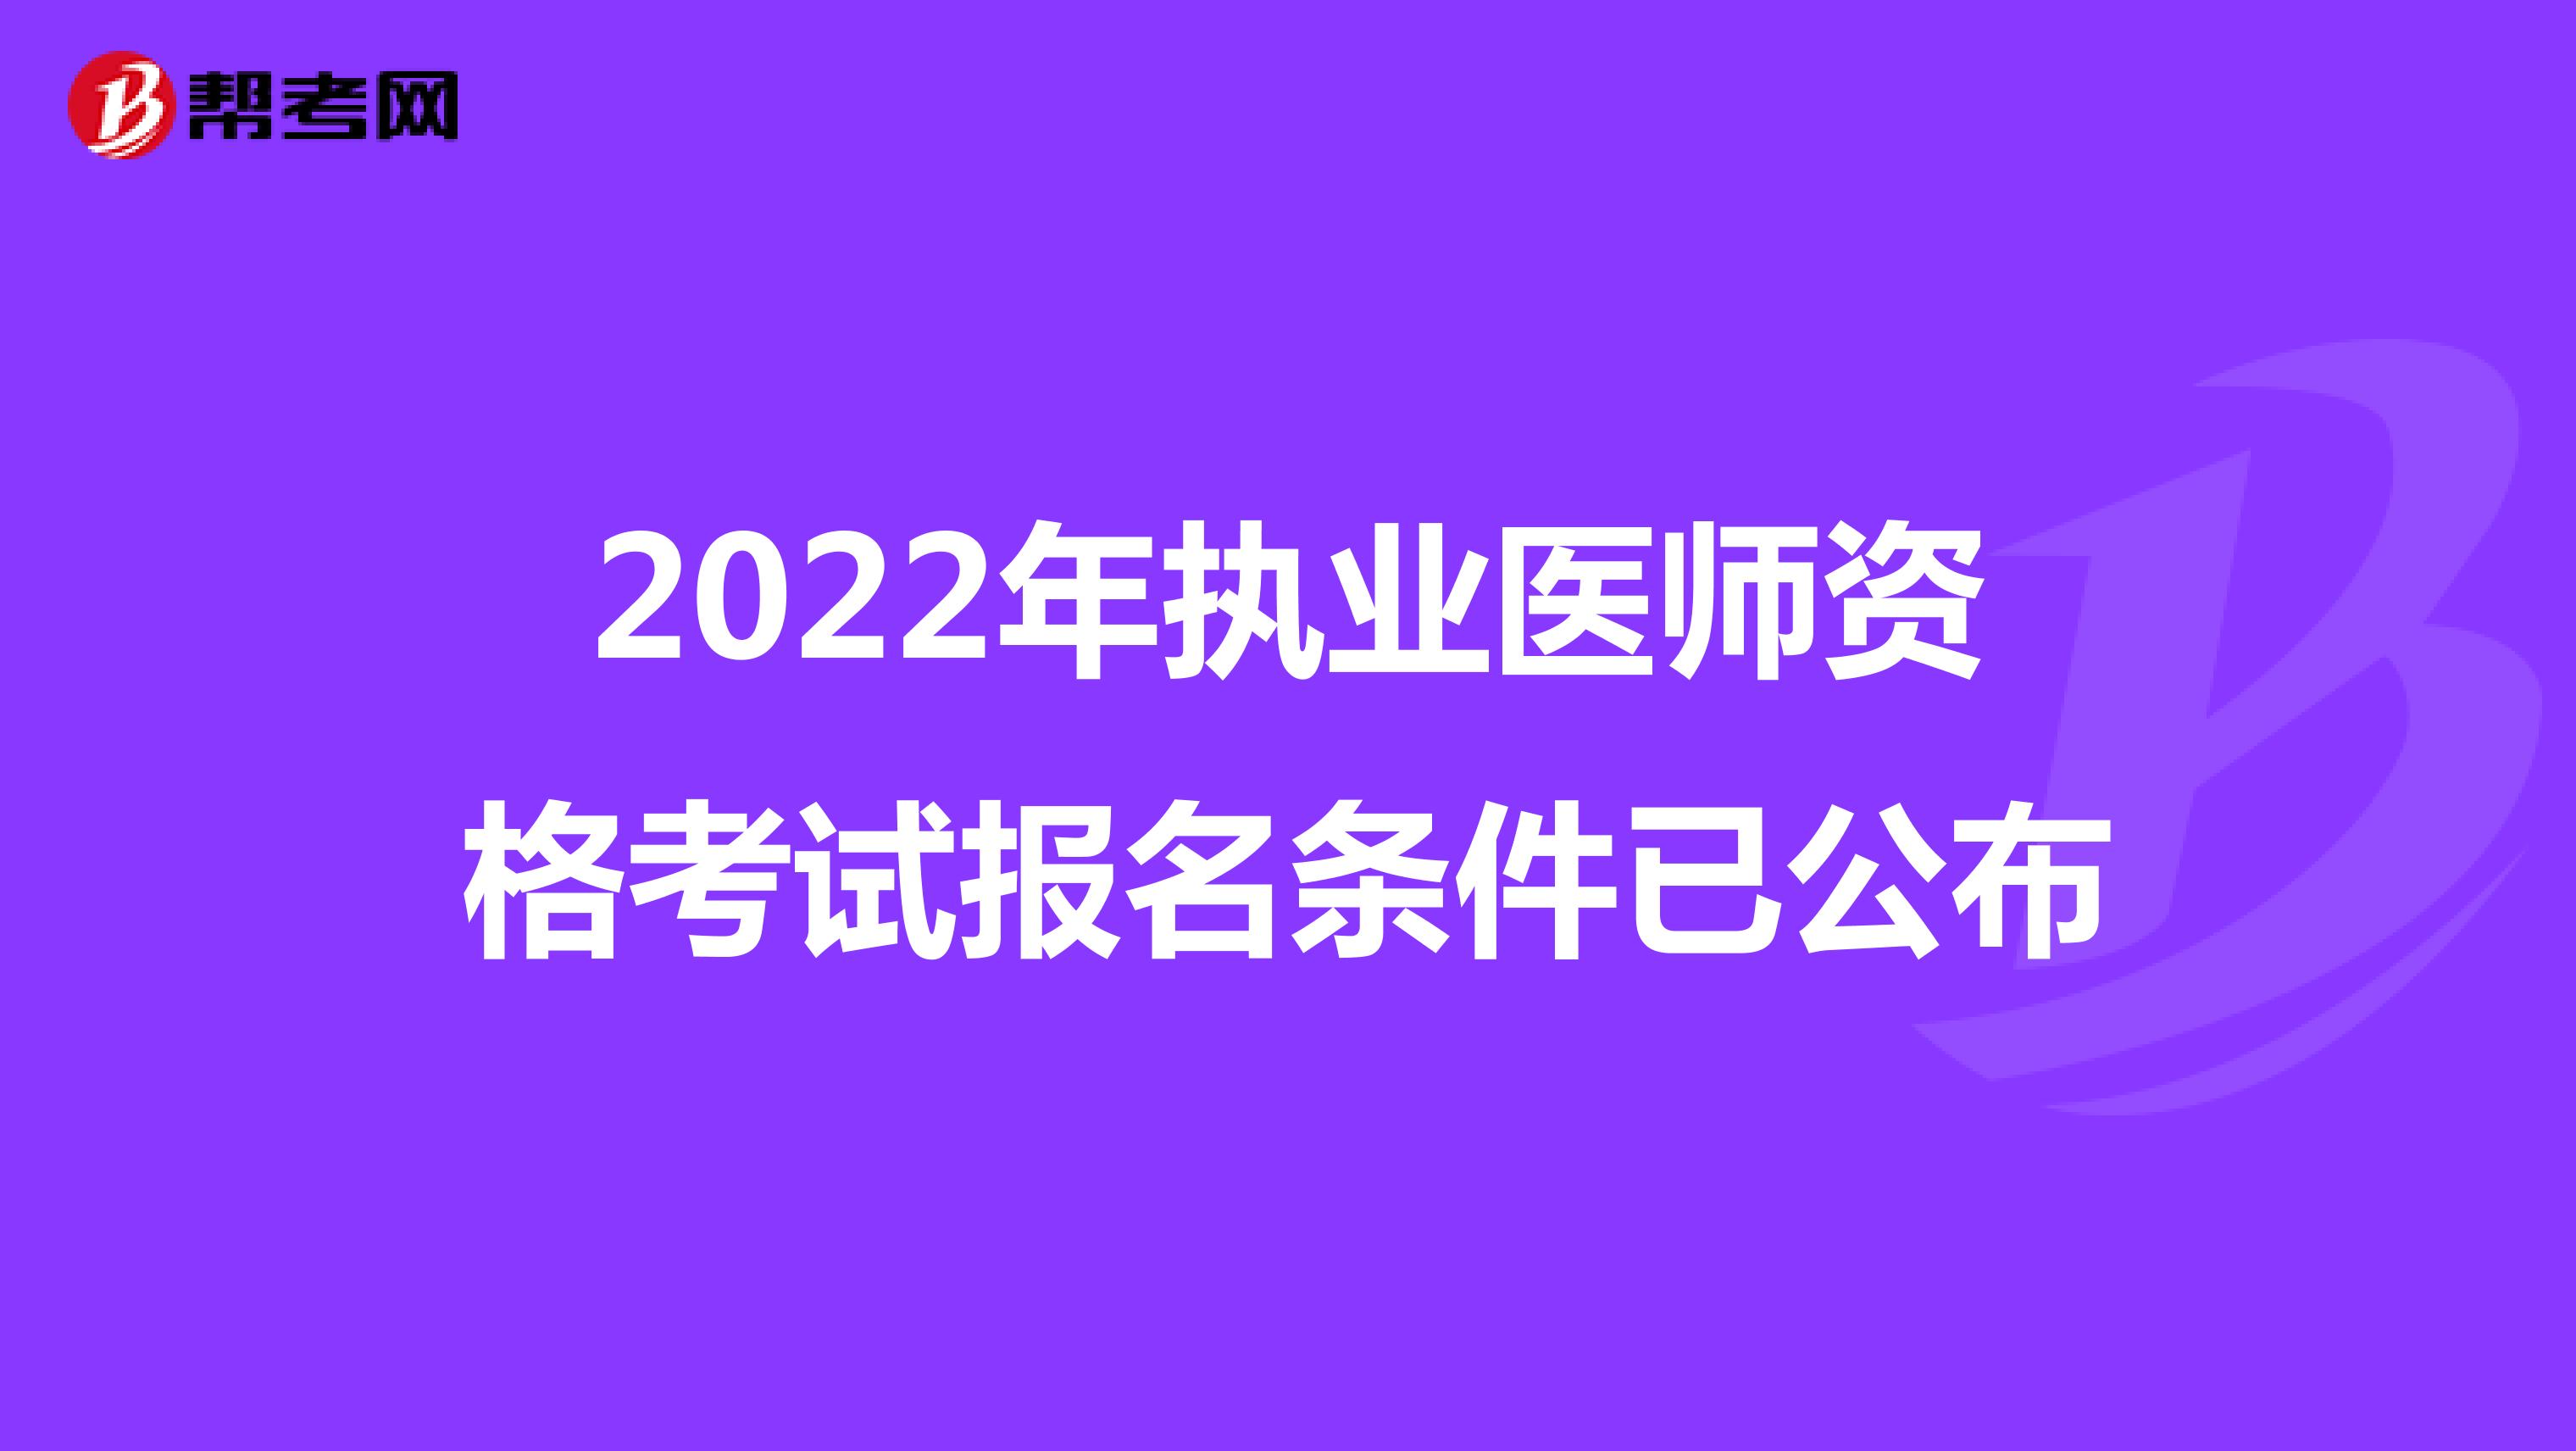 2022年执业医师资格考试报名条件已公布